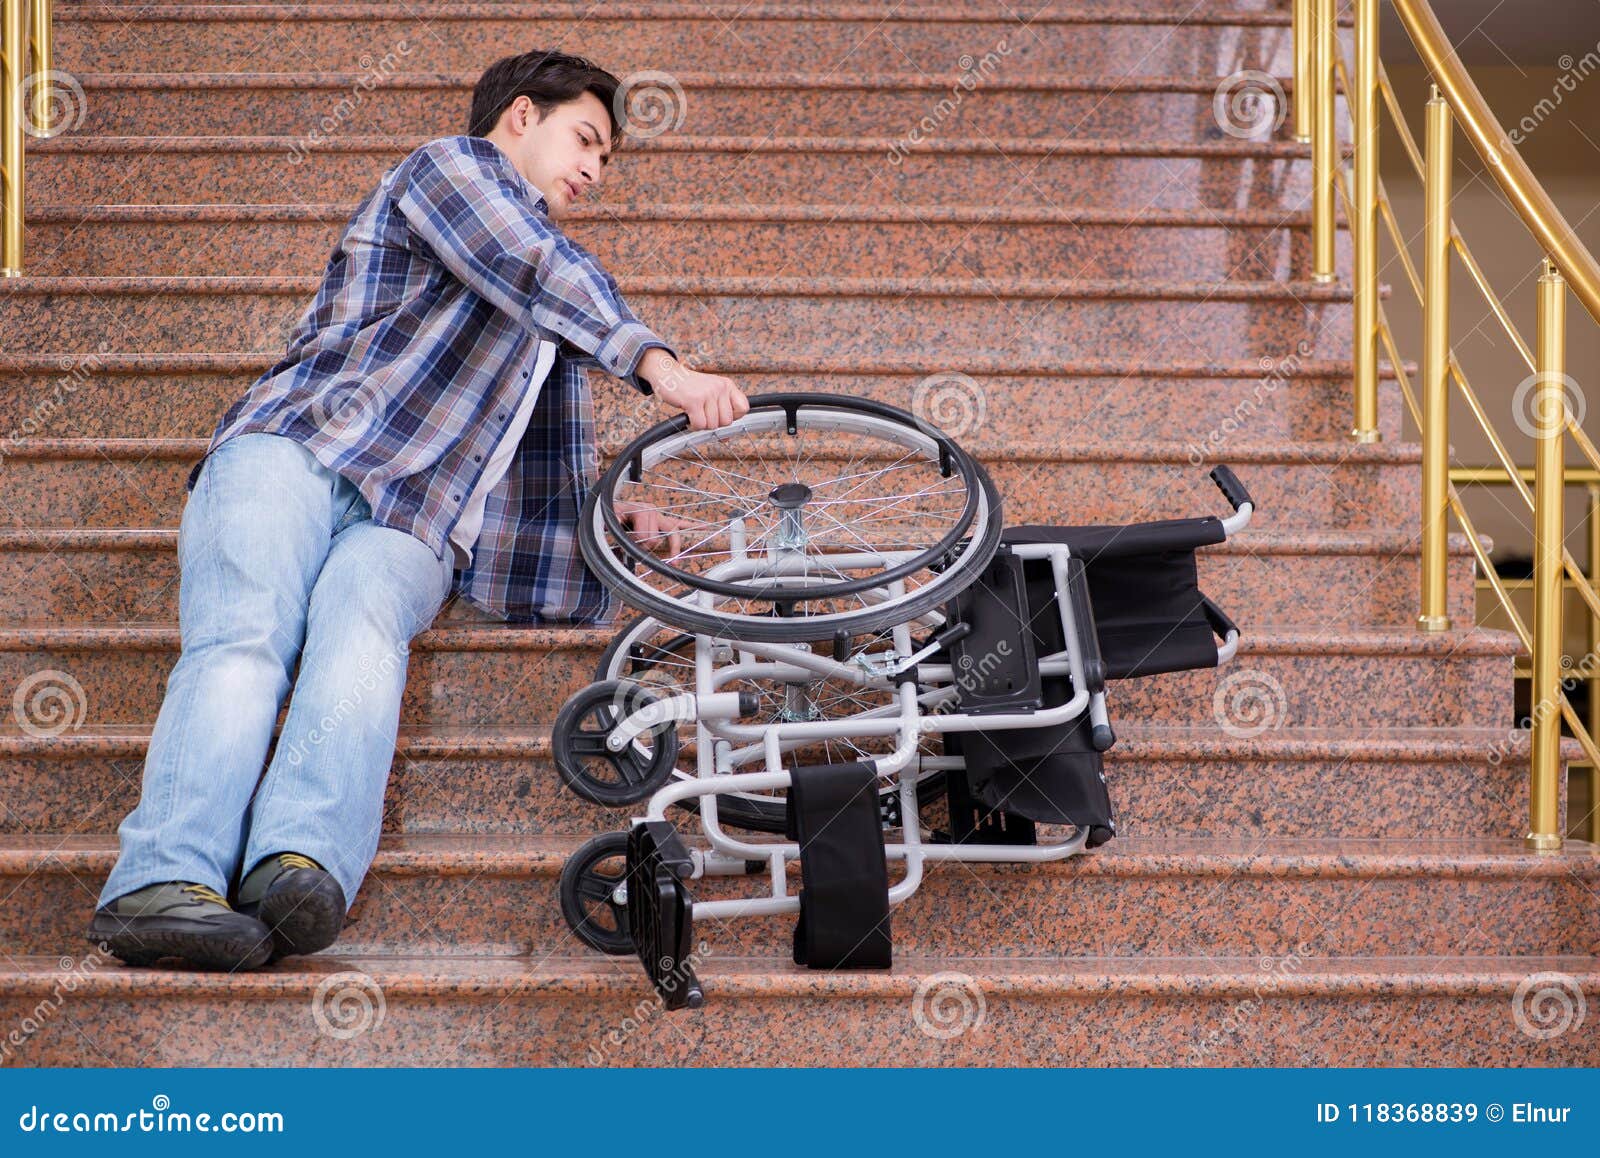 Обидела инвалида. Человек в инвалидной коляске. Коляска для инвалидов. Лестница для людей с ограниченными возможностями. Ноги инвалида колясочника.